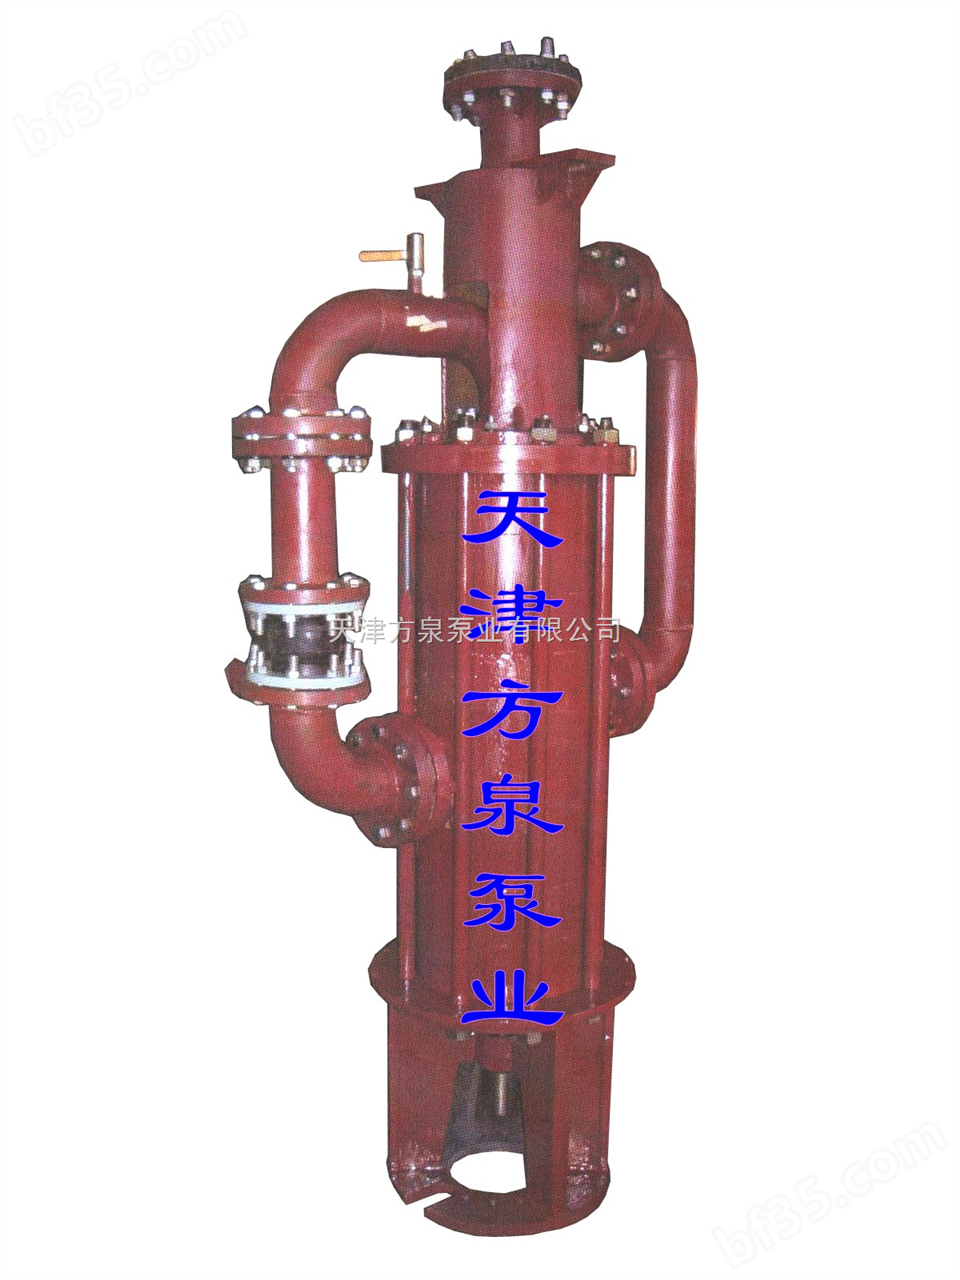 矿用多级潜水泵◈下吸式矿用泵◈矿用离心泵◈矿用热水泵